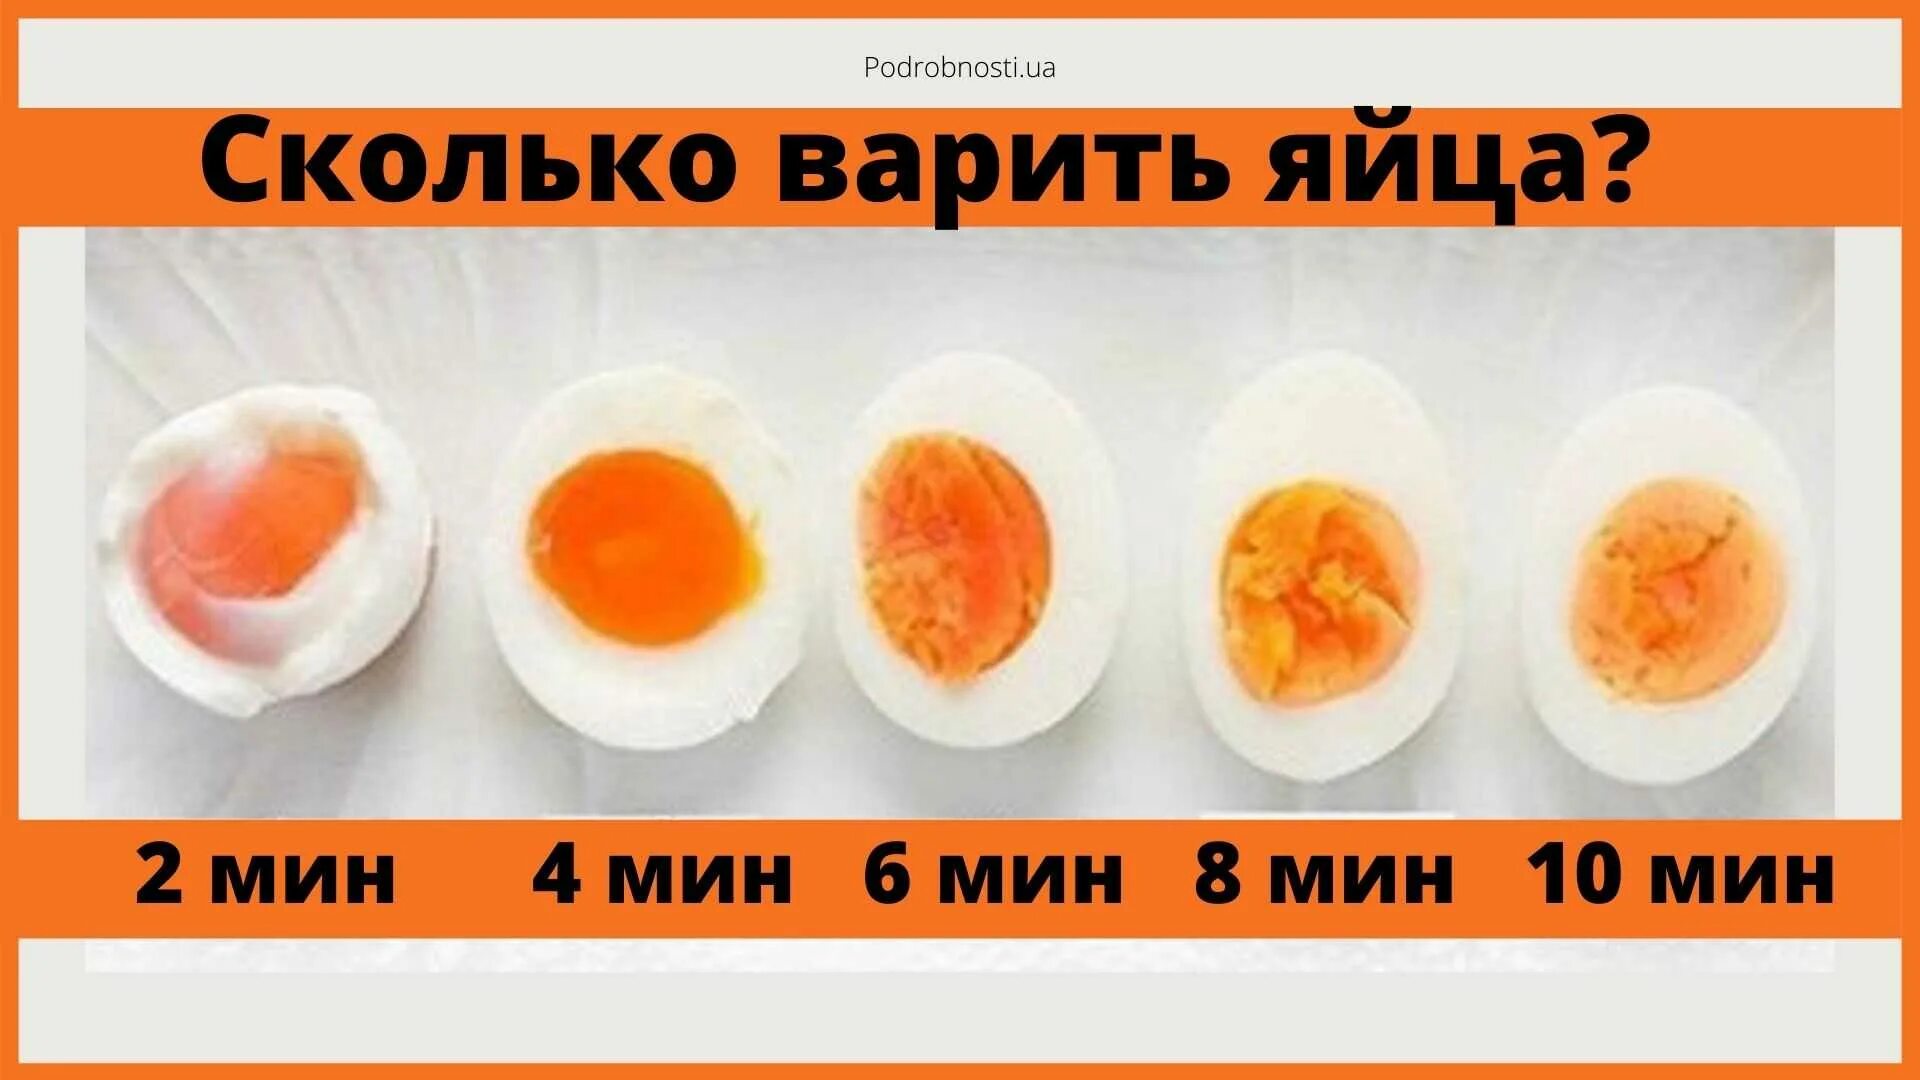 Сколько варить яйца. Сколько варить яицо всмятку. Сколько варить яйца в смчткк. Яйцо в смчтку сколтко вприть.